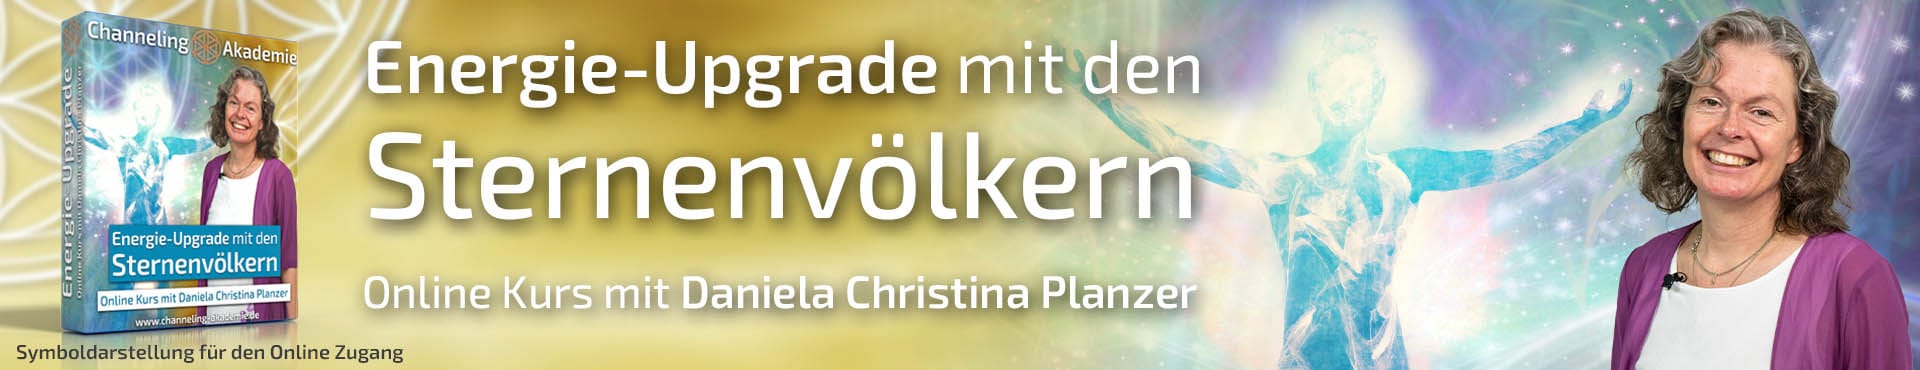 Energie-Upgrade mit den Sternenvölkern - Online Kurs mit Daniela Christina Planzer